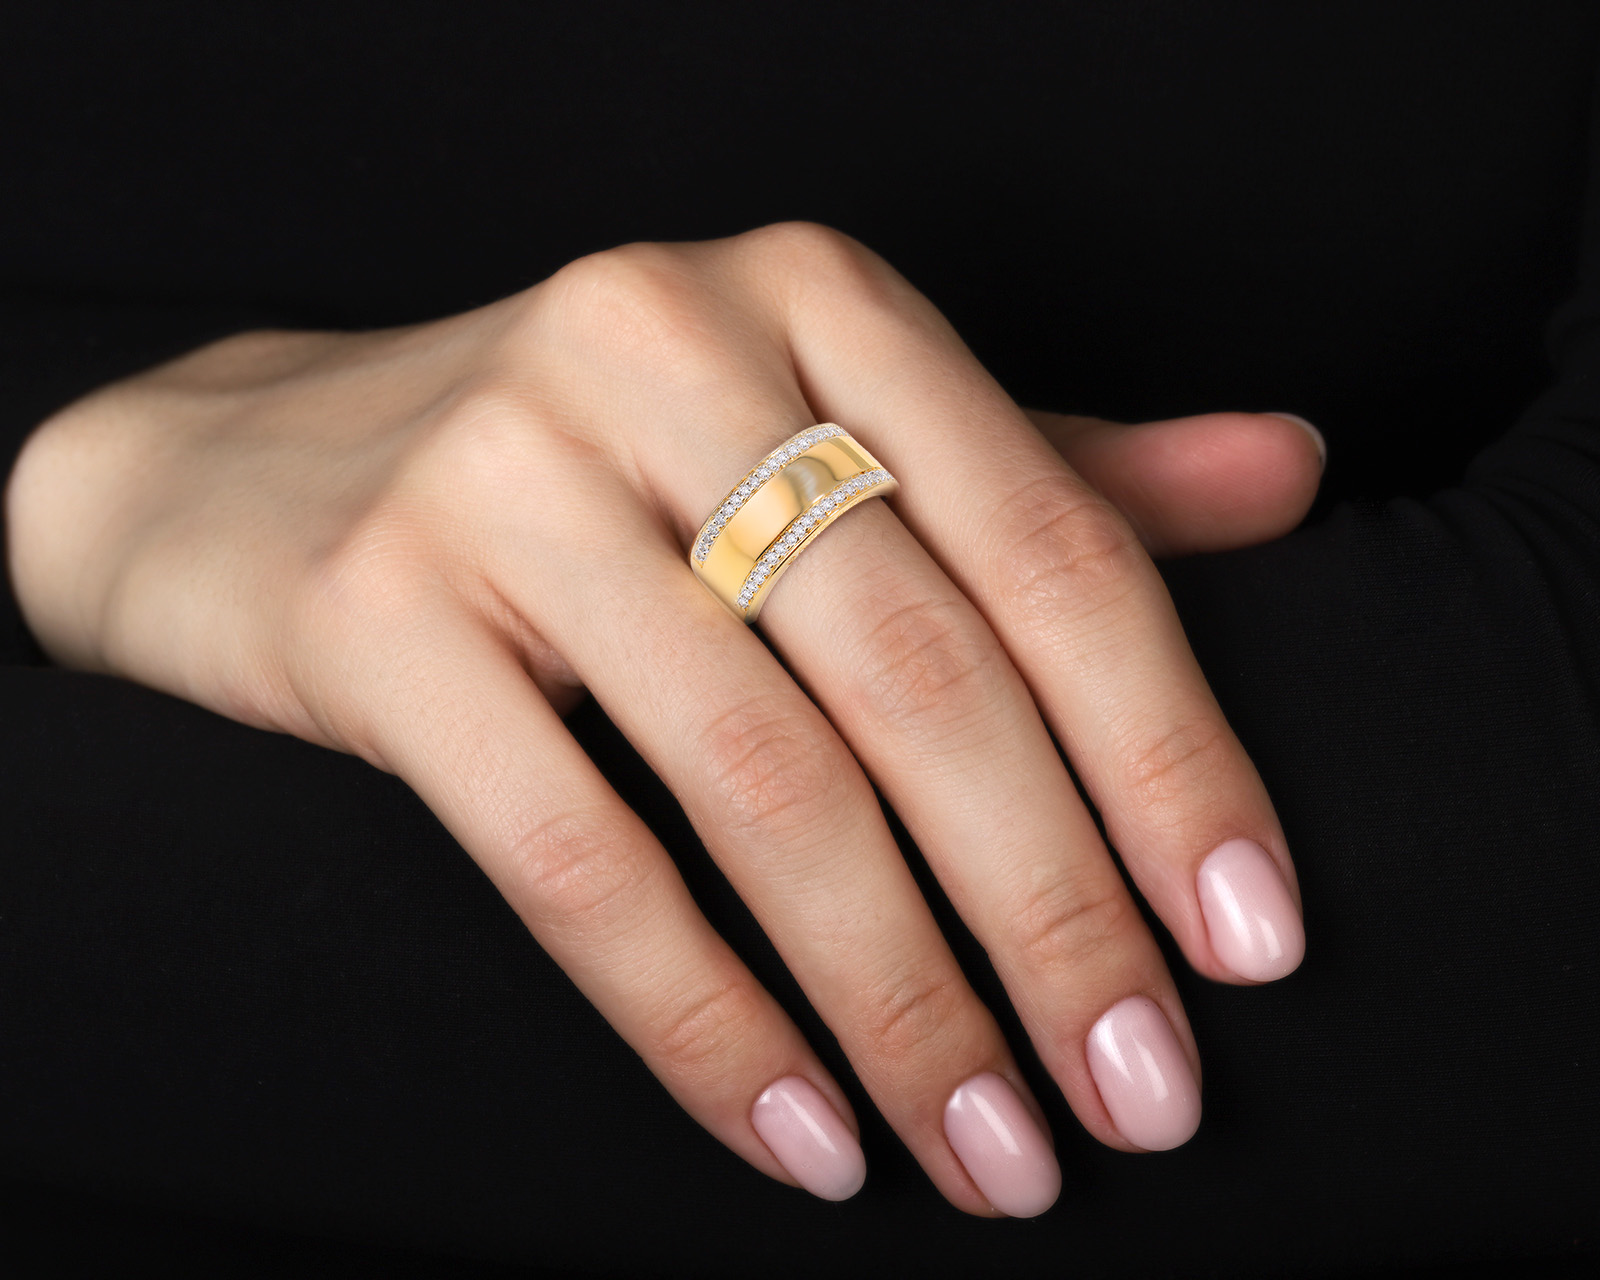 Оригинальное золотое кольцо с бриллиантами 0.20ct Balmain